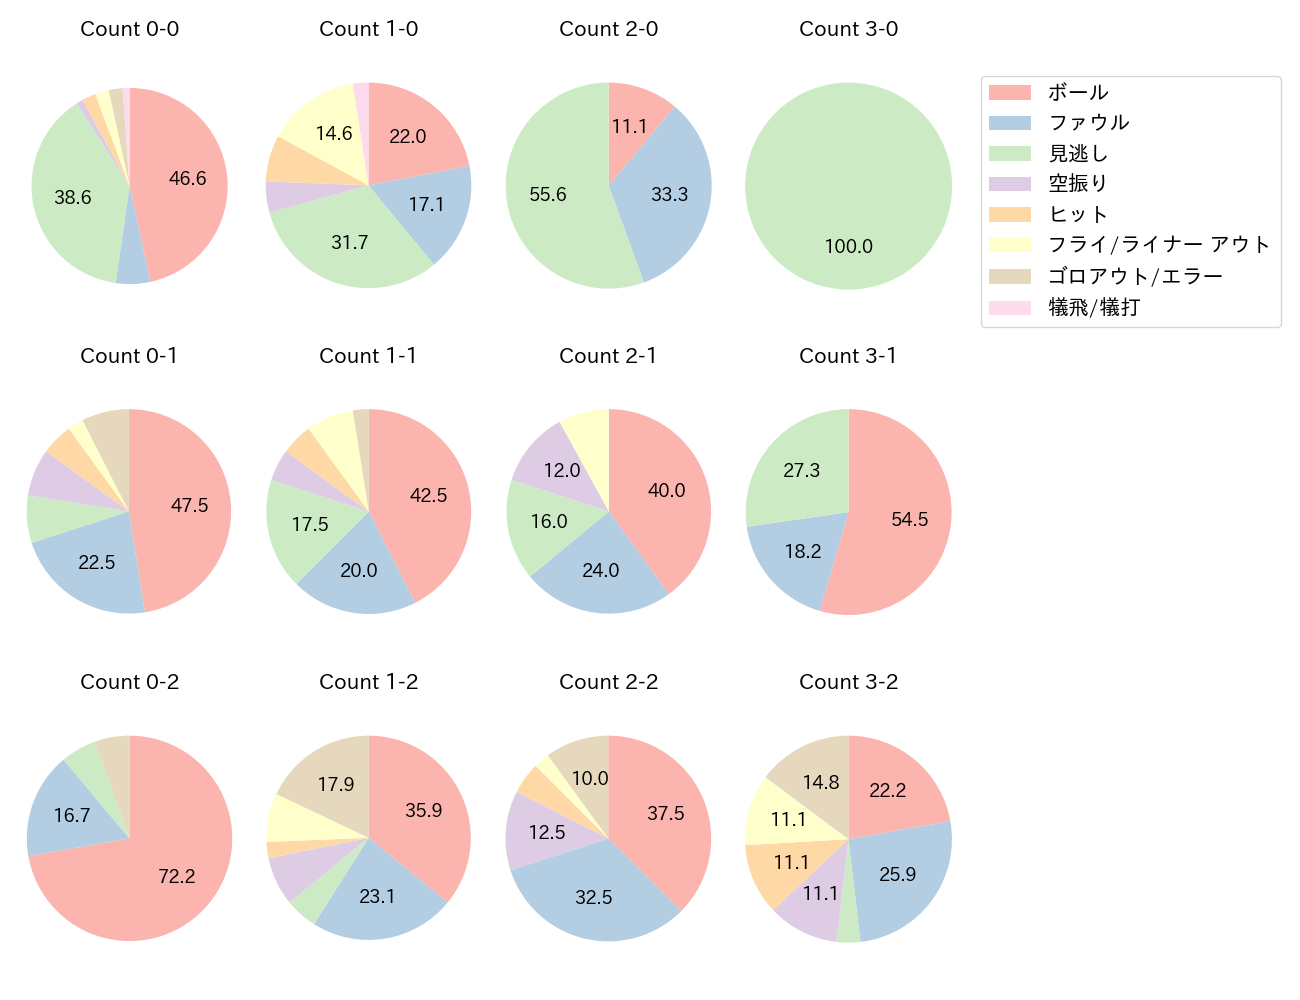 中村 晃の球数分布(2021年6月)